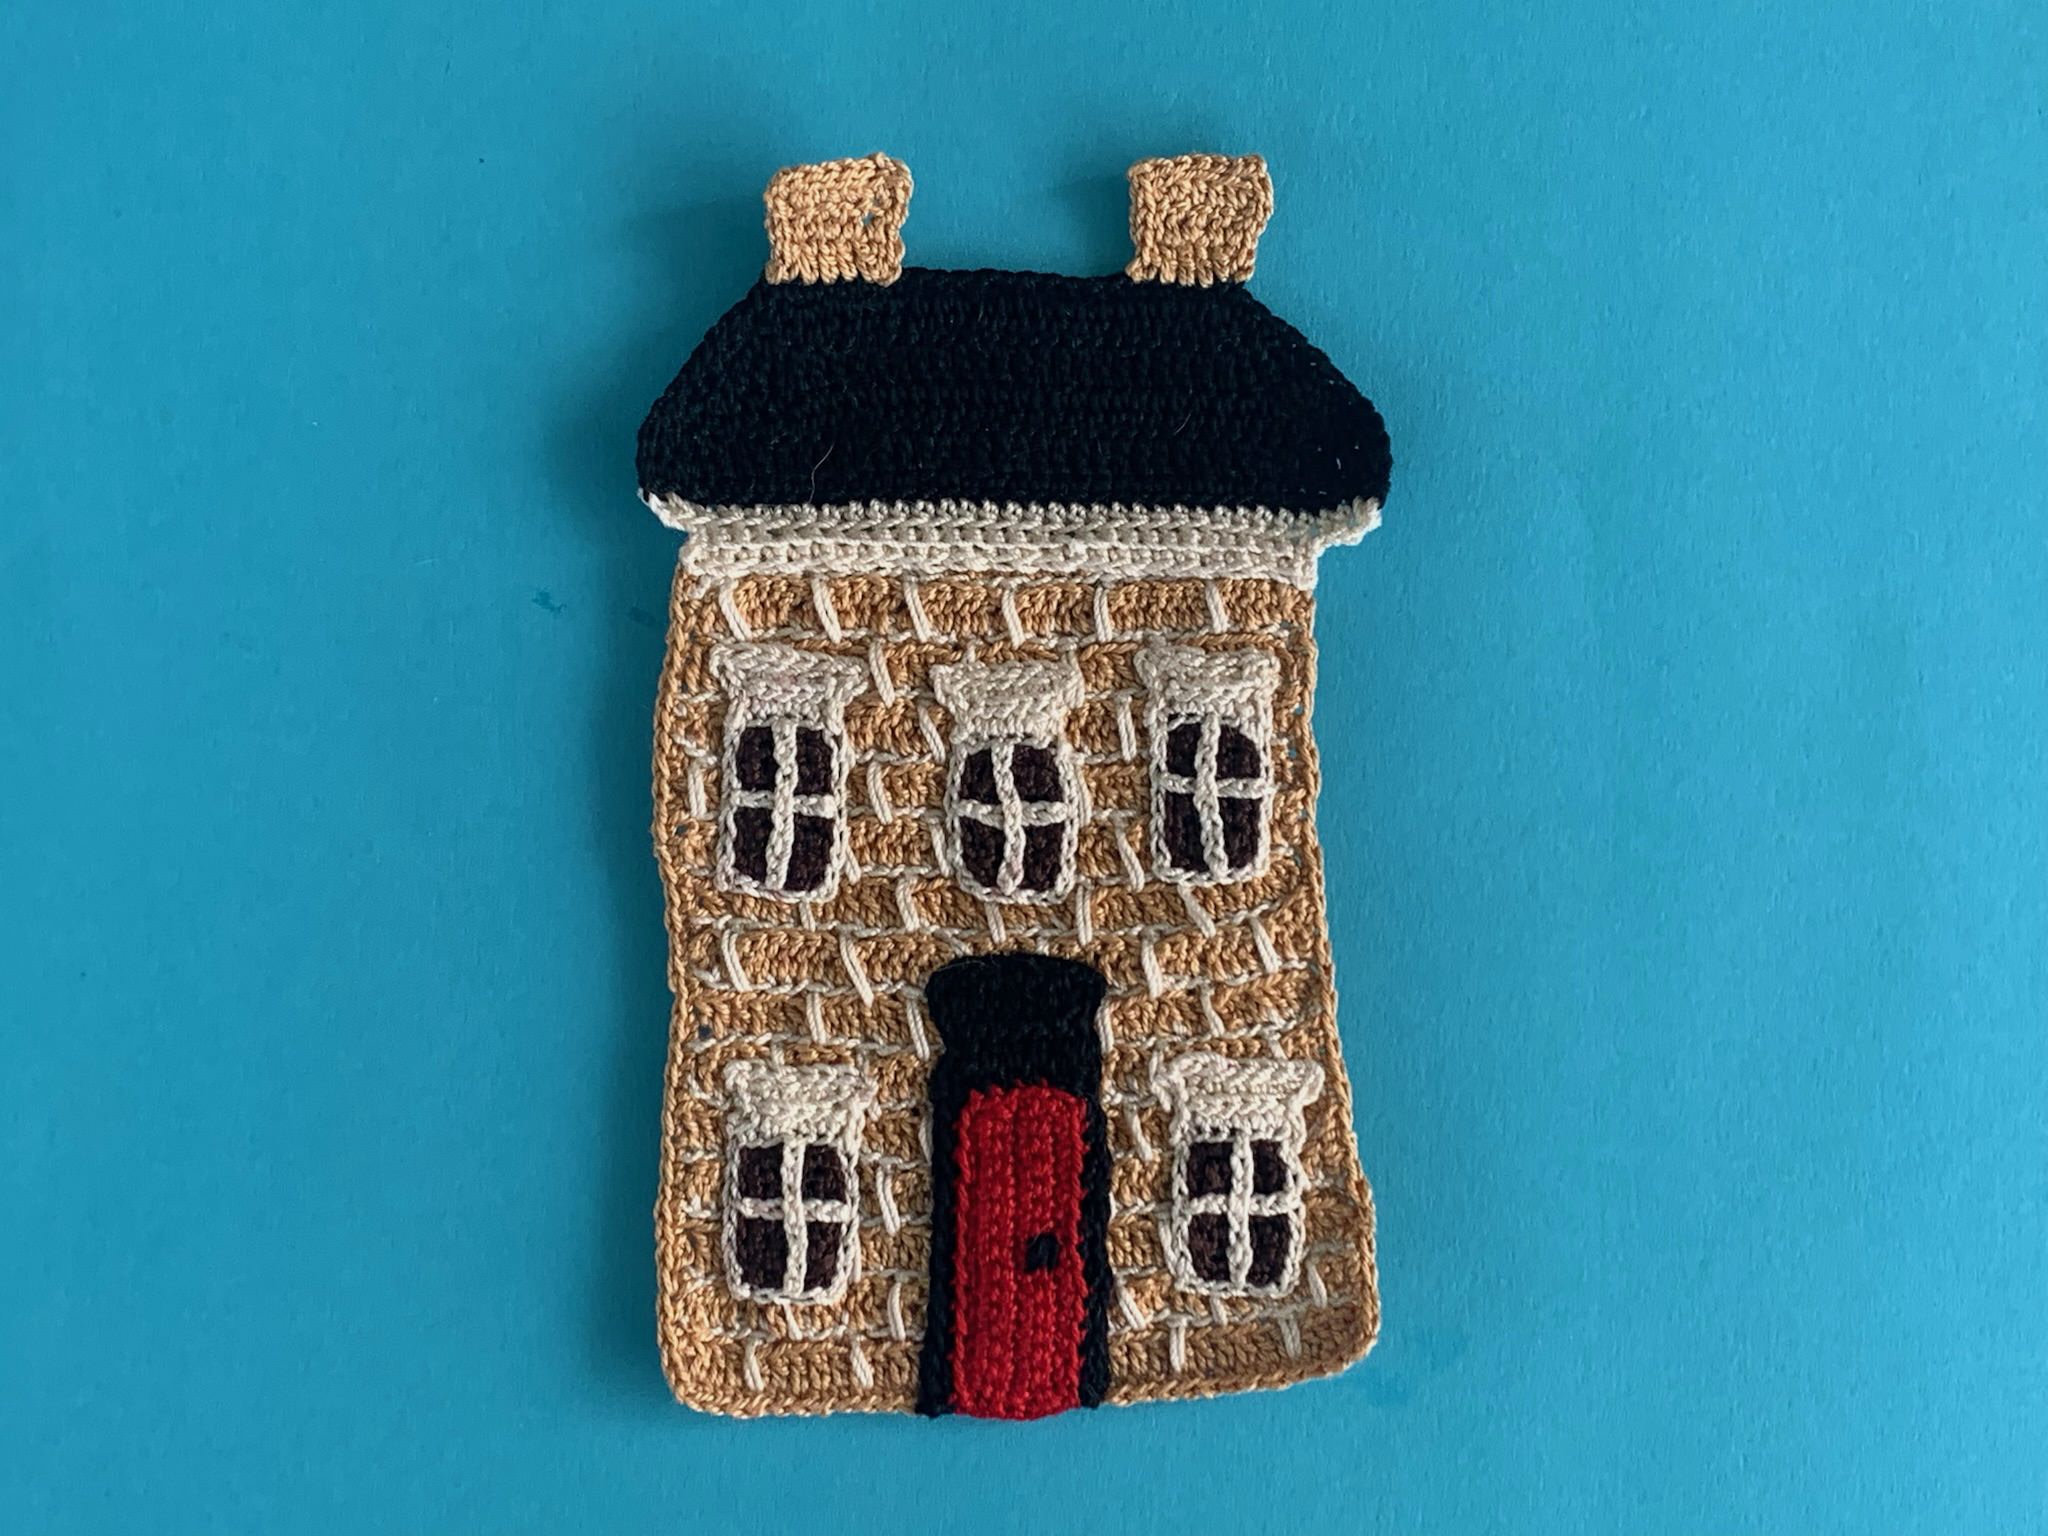 Finished crochet house 2 ply brick house landscape